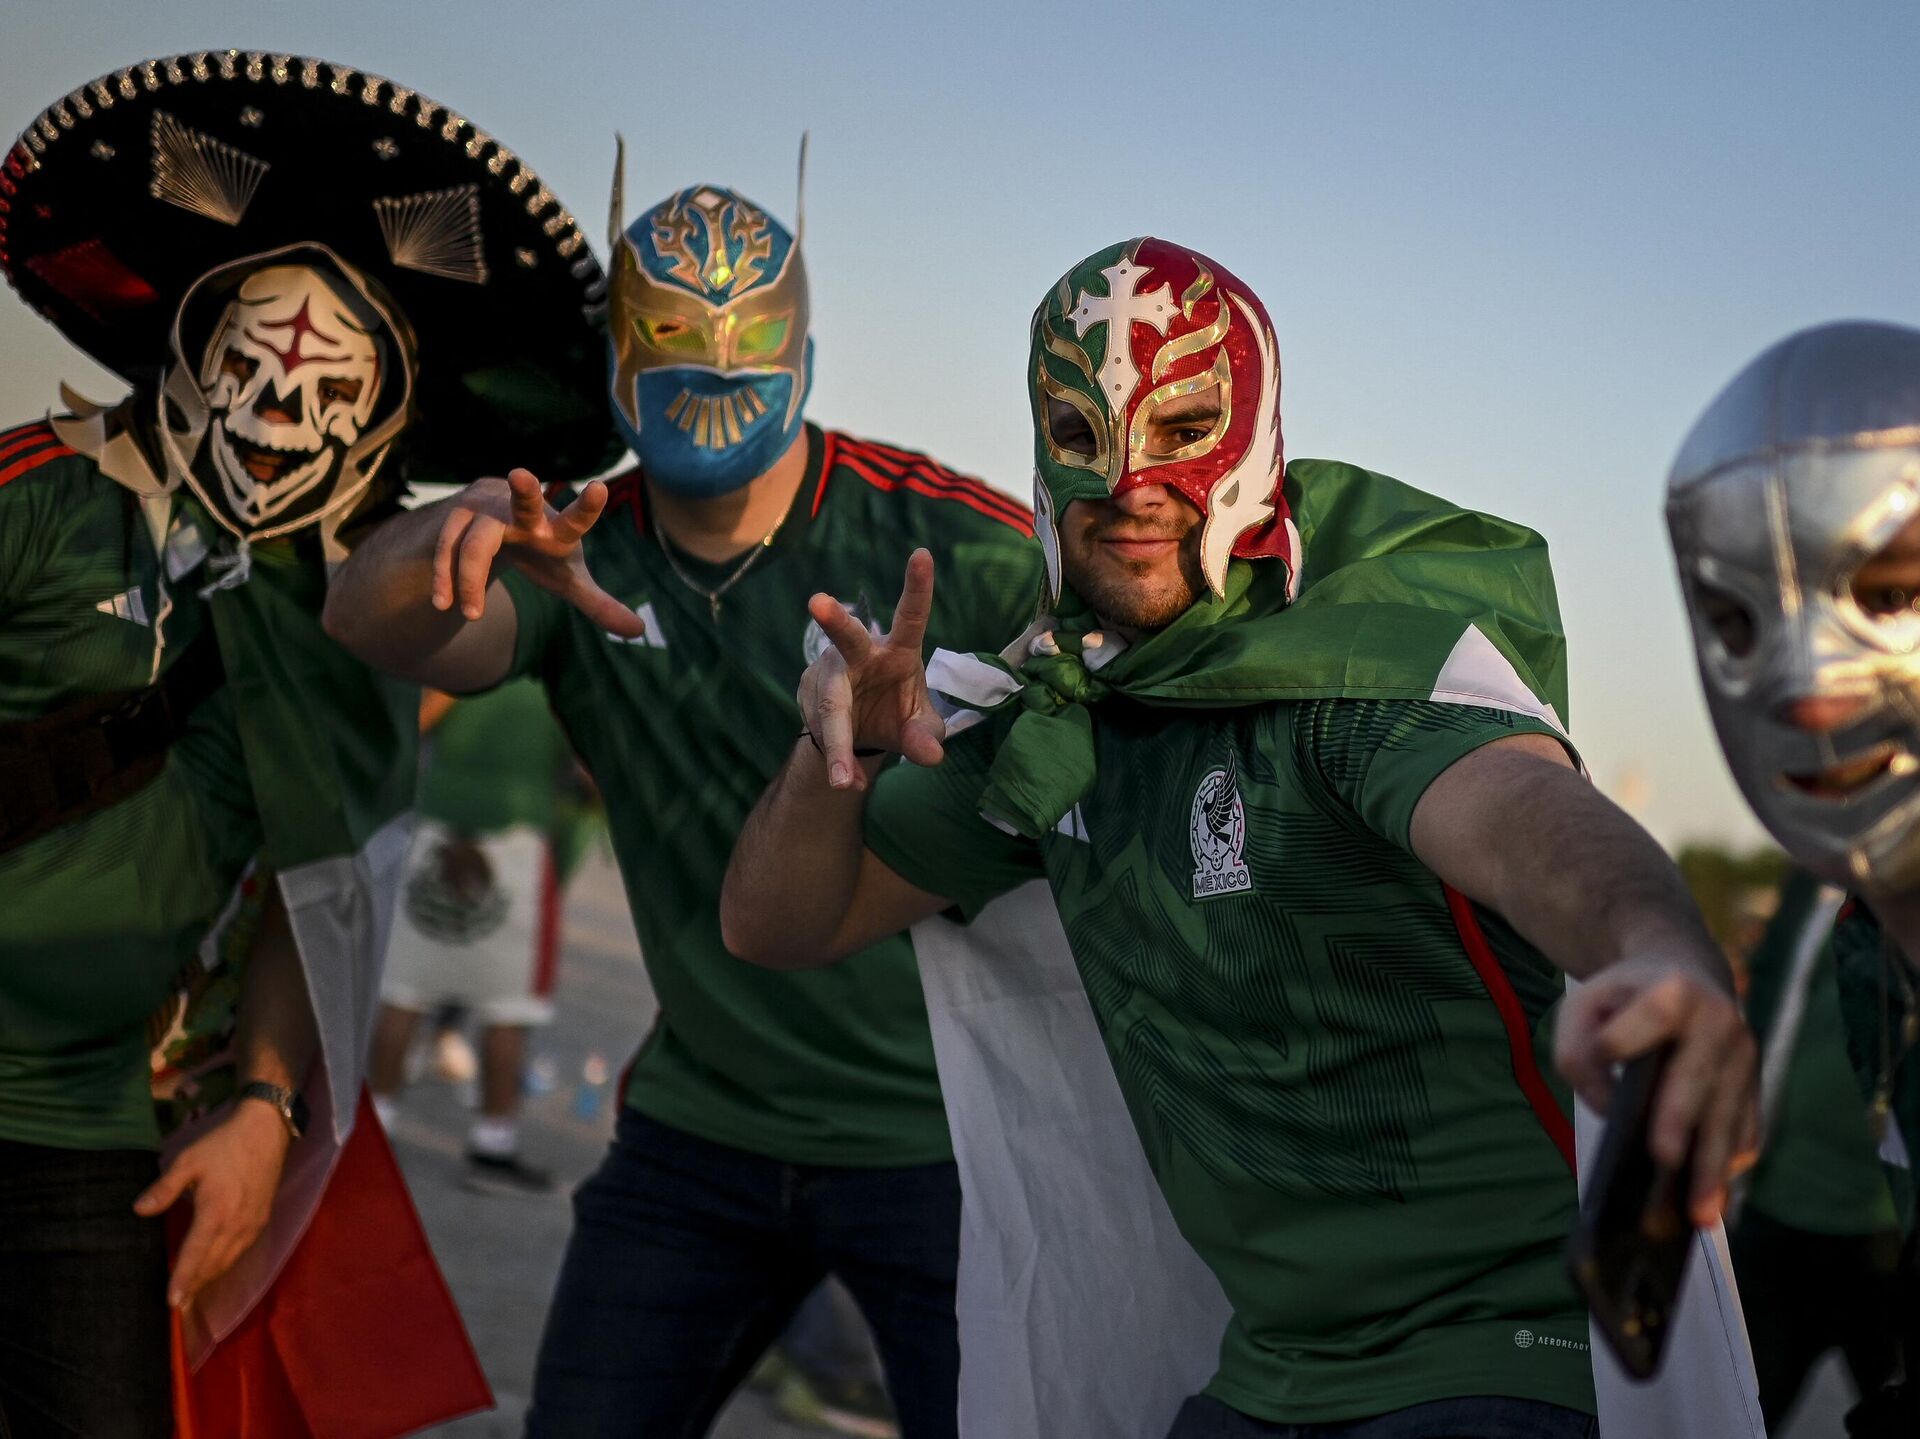 Amplificador Culpable barco Mexicanos organizan show de lucha libre en el metro de Catar | Video -  24.11.2022, Sputnik Mundo